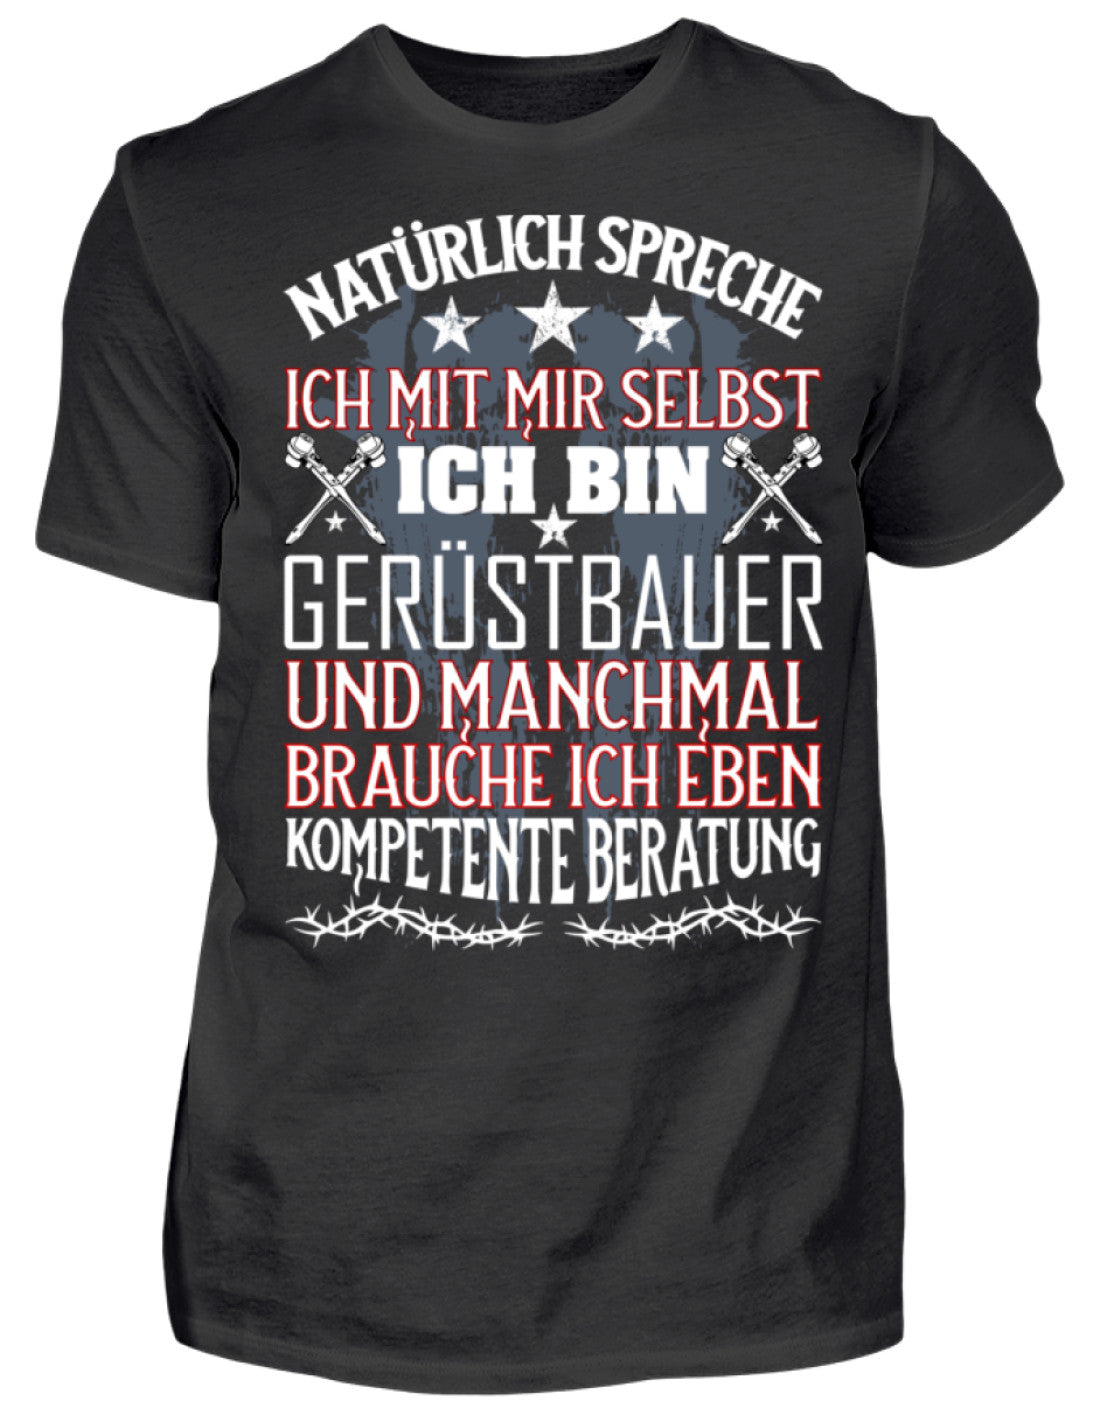 Gerüstbauer Shirt / Kompetente Beratung €21.95 Gerüstbauer - Shop >>